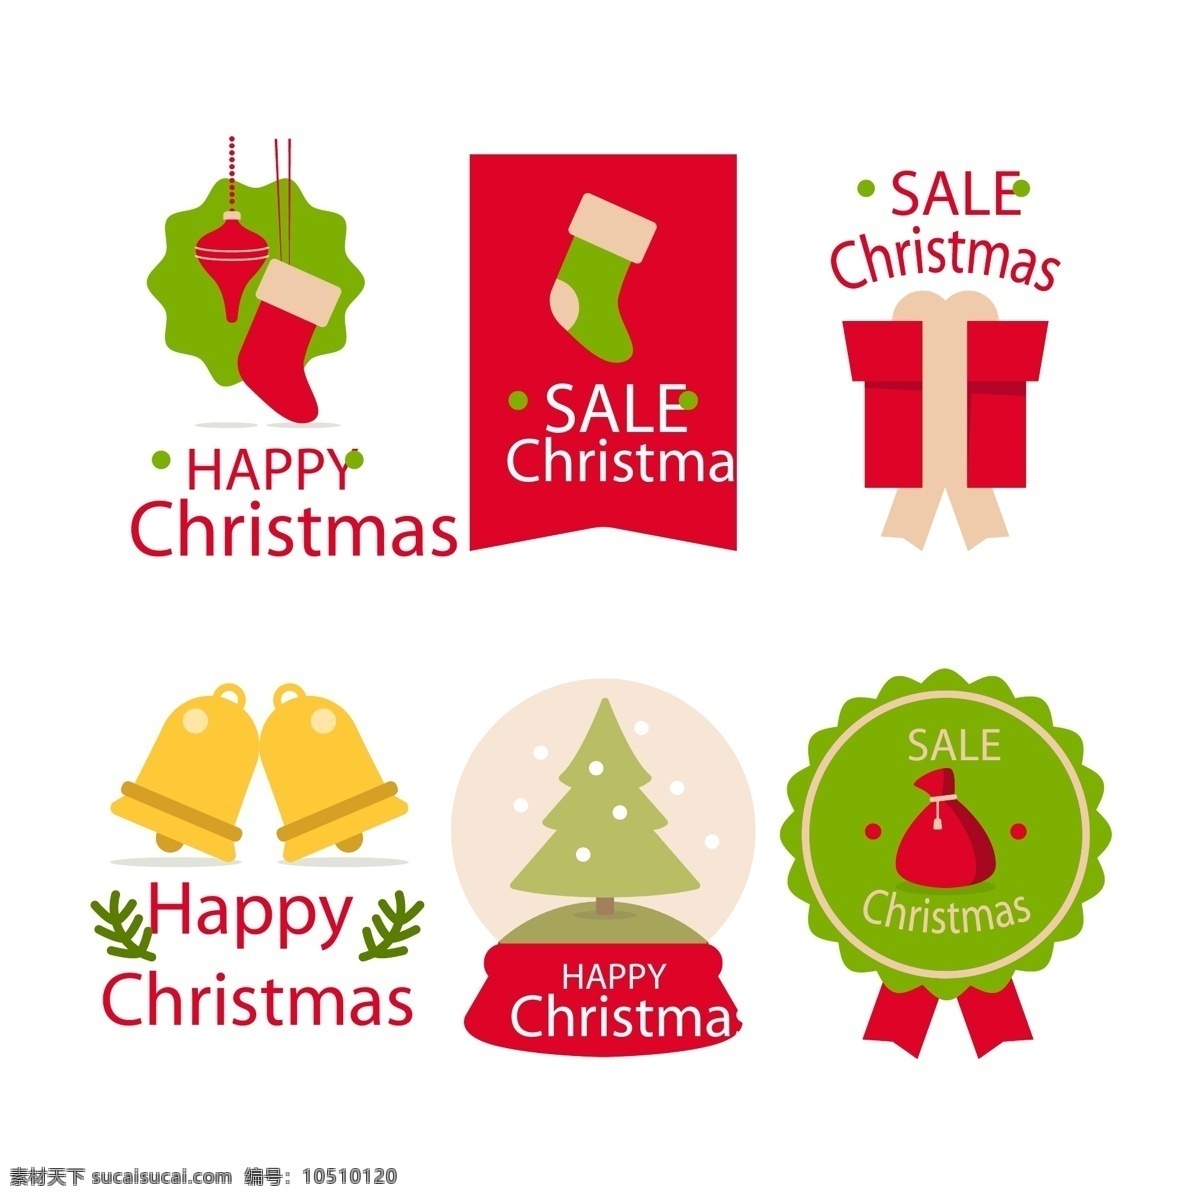 彩色 图案 圣诞节 英文 标签 雪花 礼物 矢量素材 卡通 圣诞袜 圣诞树 铃铛